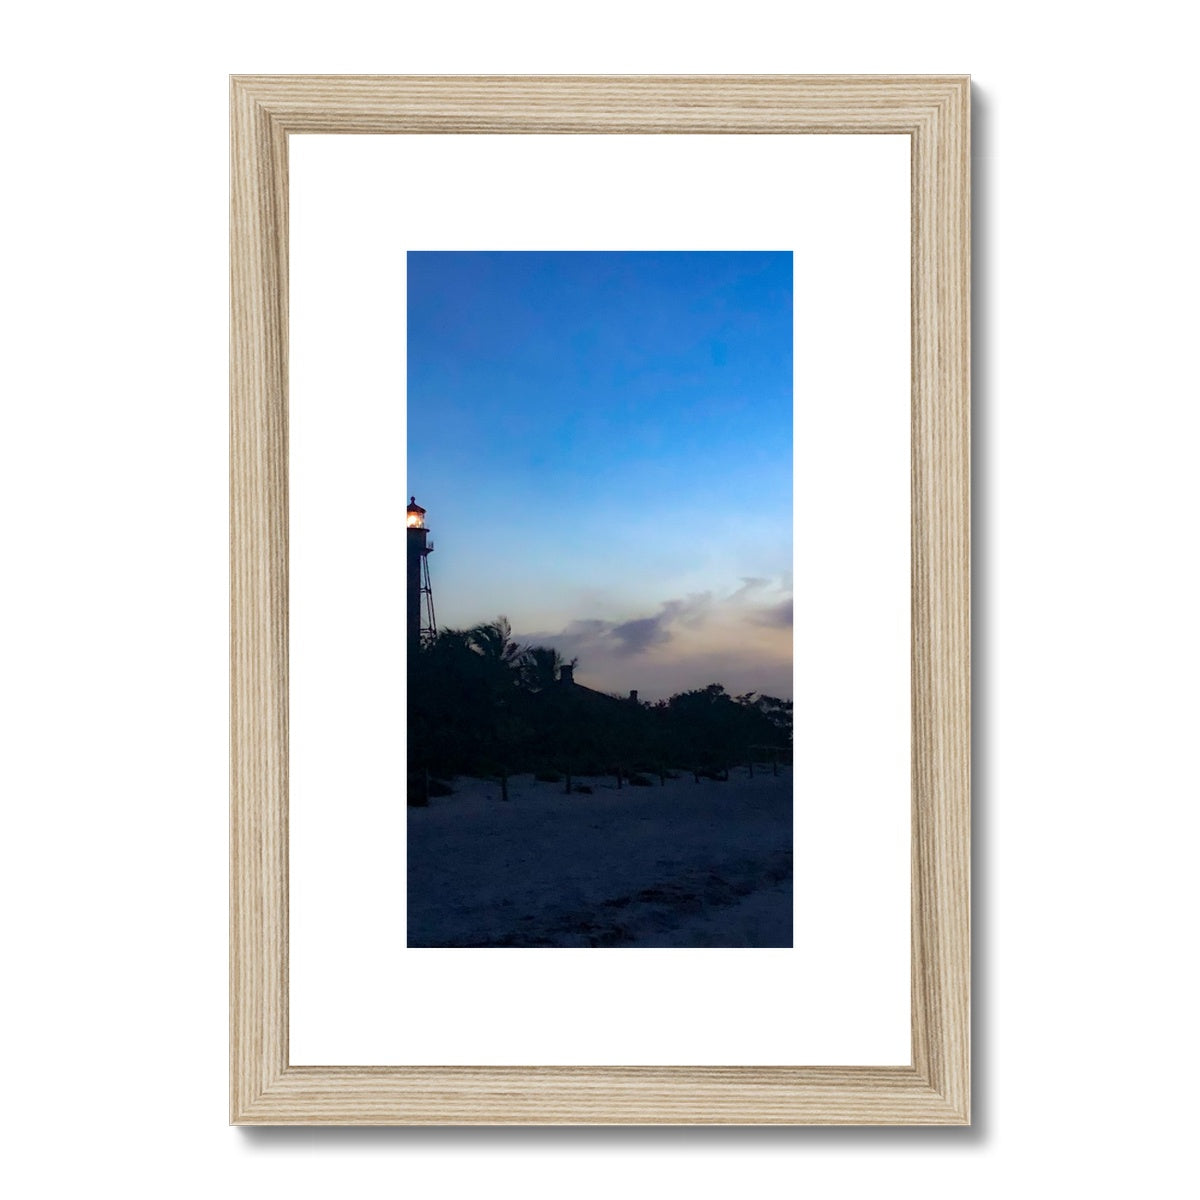 Sanibel Lighthouse  Framed & Mounted Print